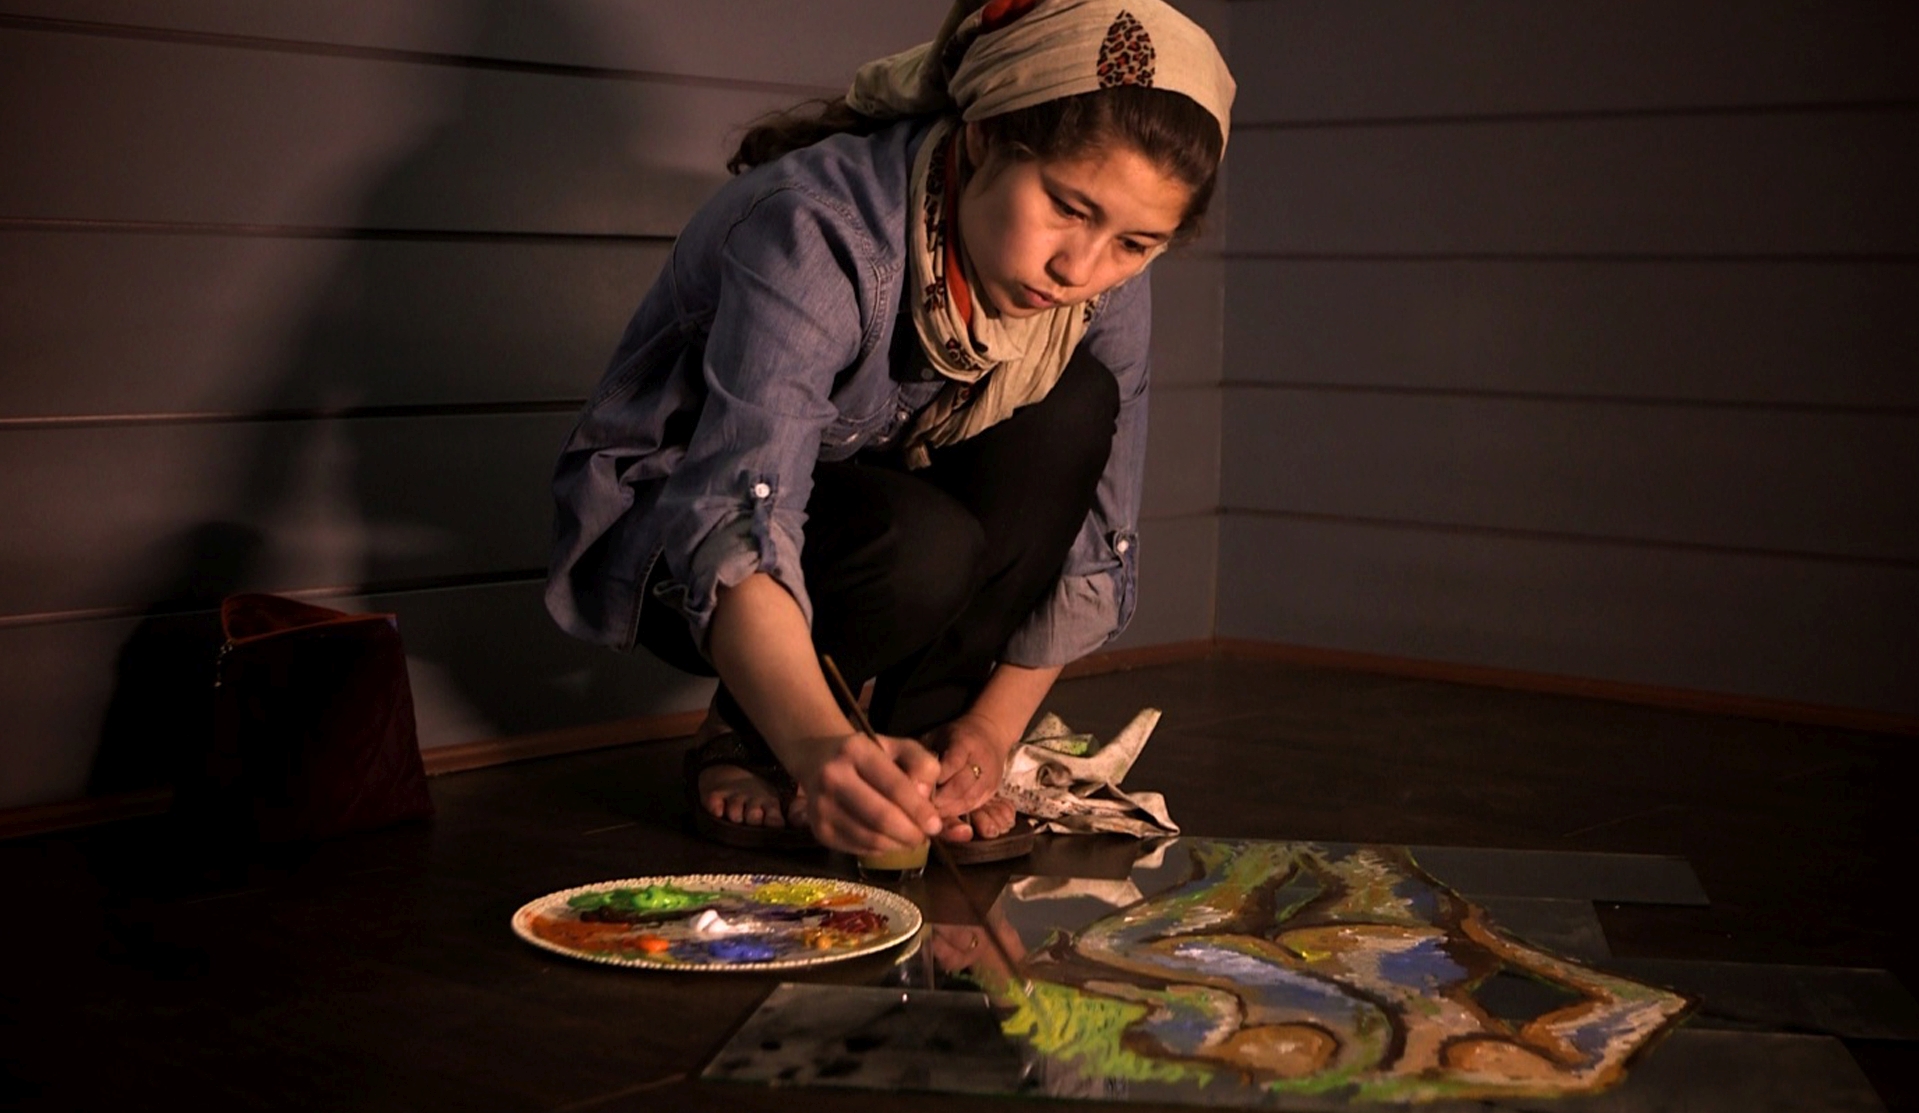 Faiqa Sultani begann nach dem Anschlag, Bilder mit Motiven zu malen, die in Afghanistan tabu sind. Sie bekommt Todesdrohungen.  © Brot und Zwiebel